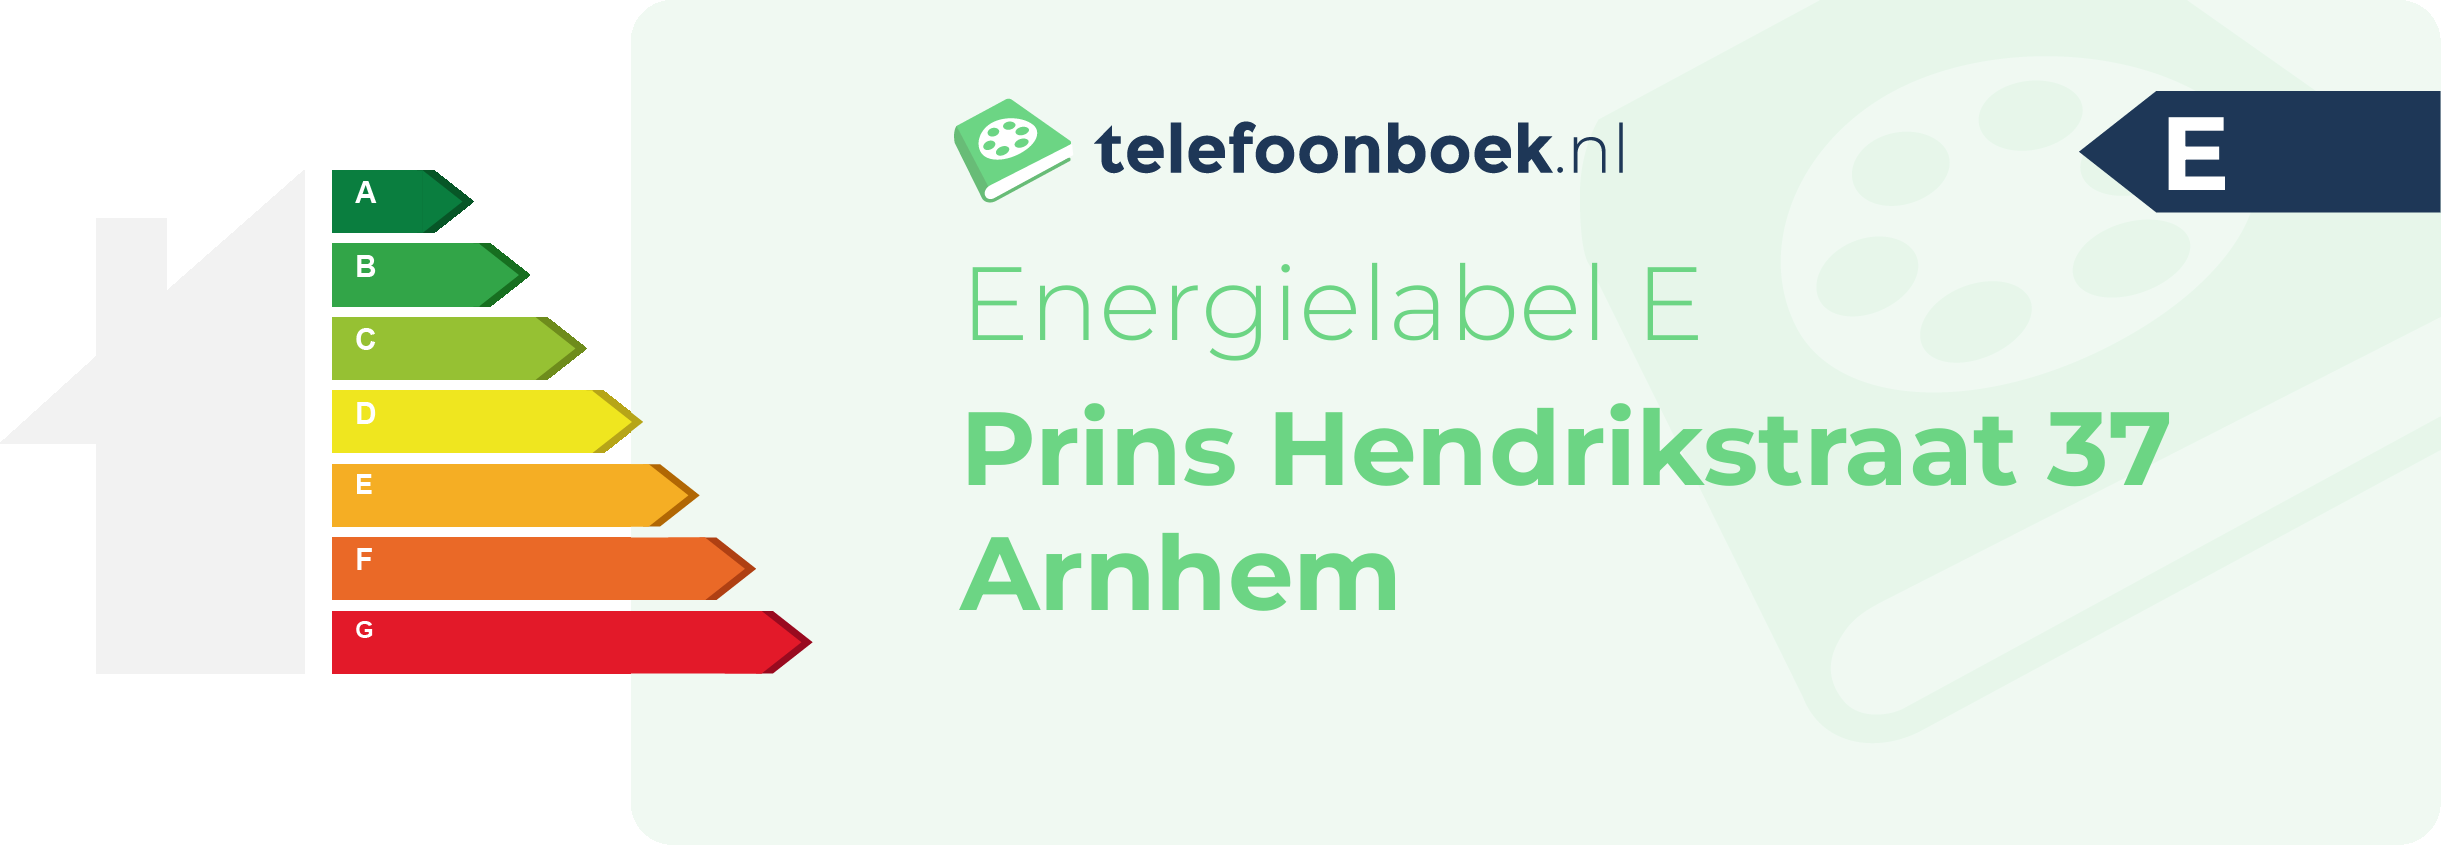 Energielabel Prins Hendrikstraat 37 Arnhem